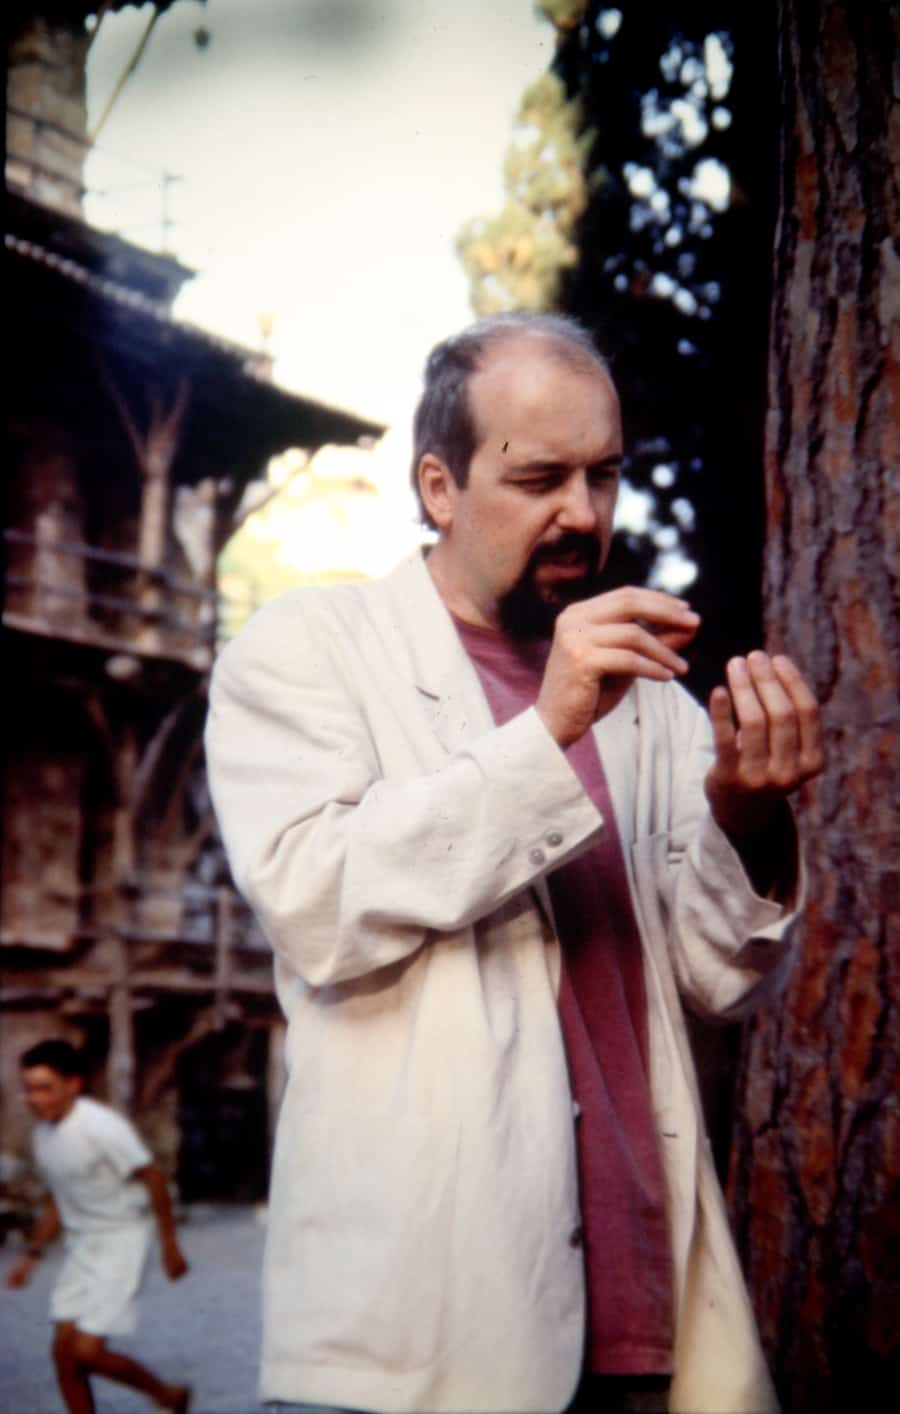 Bill Viola, 1993. Rassegna internazionale video d'autore. Taormina.